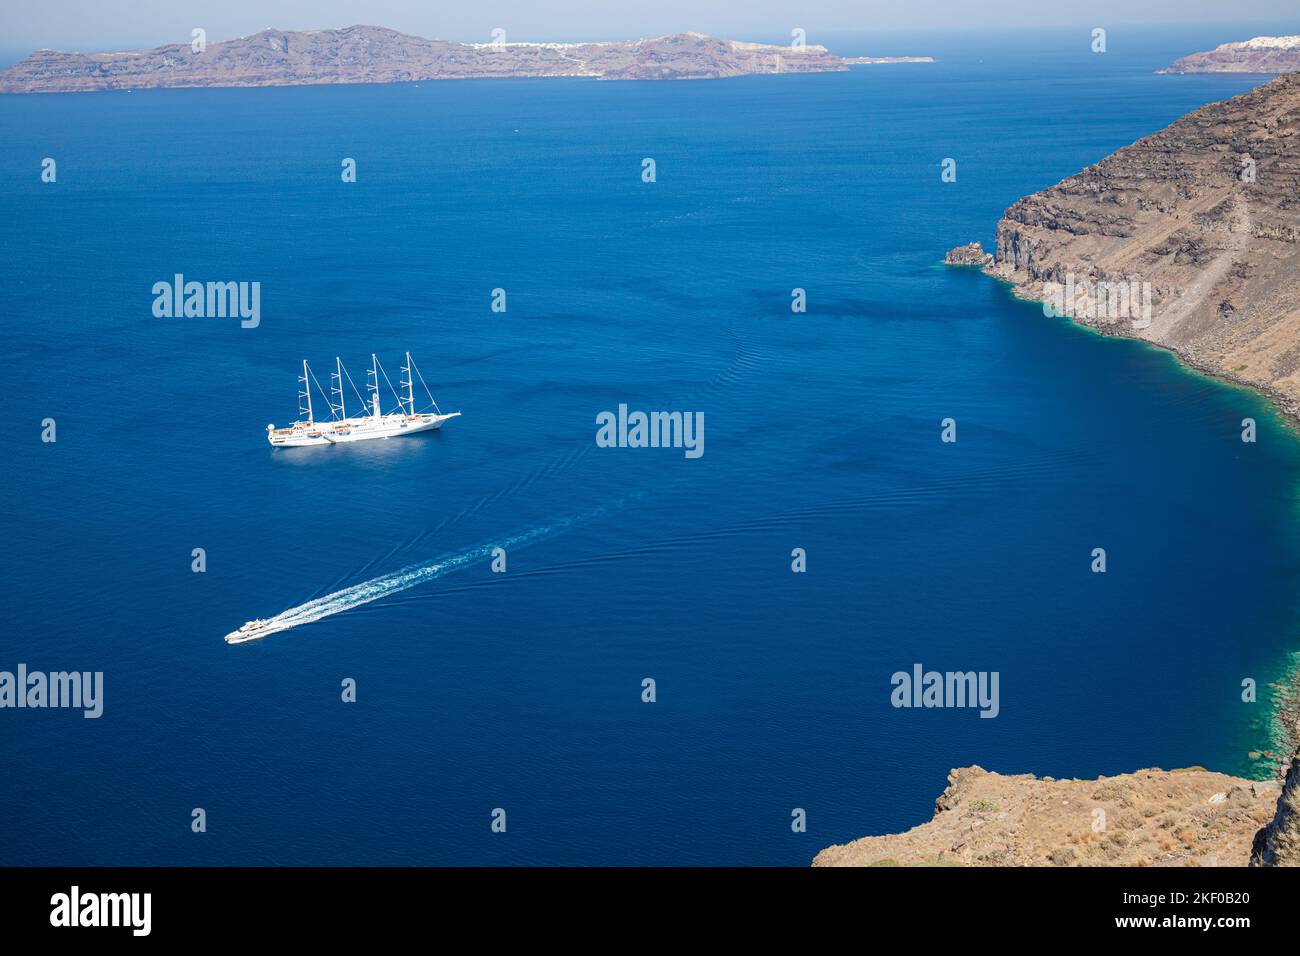 Nave da crociera sul mare blu profondo dell'isola di Santorini, nella baia della Grecia con piccole barche da trasporto. Vacanze estive, tour turismo persone nel Mediterraneo Foto Stock